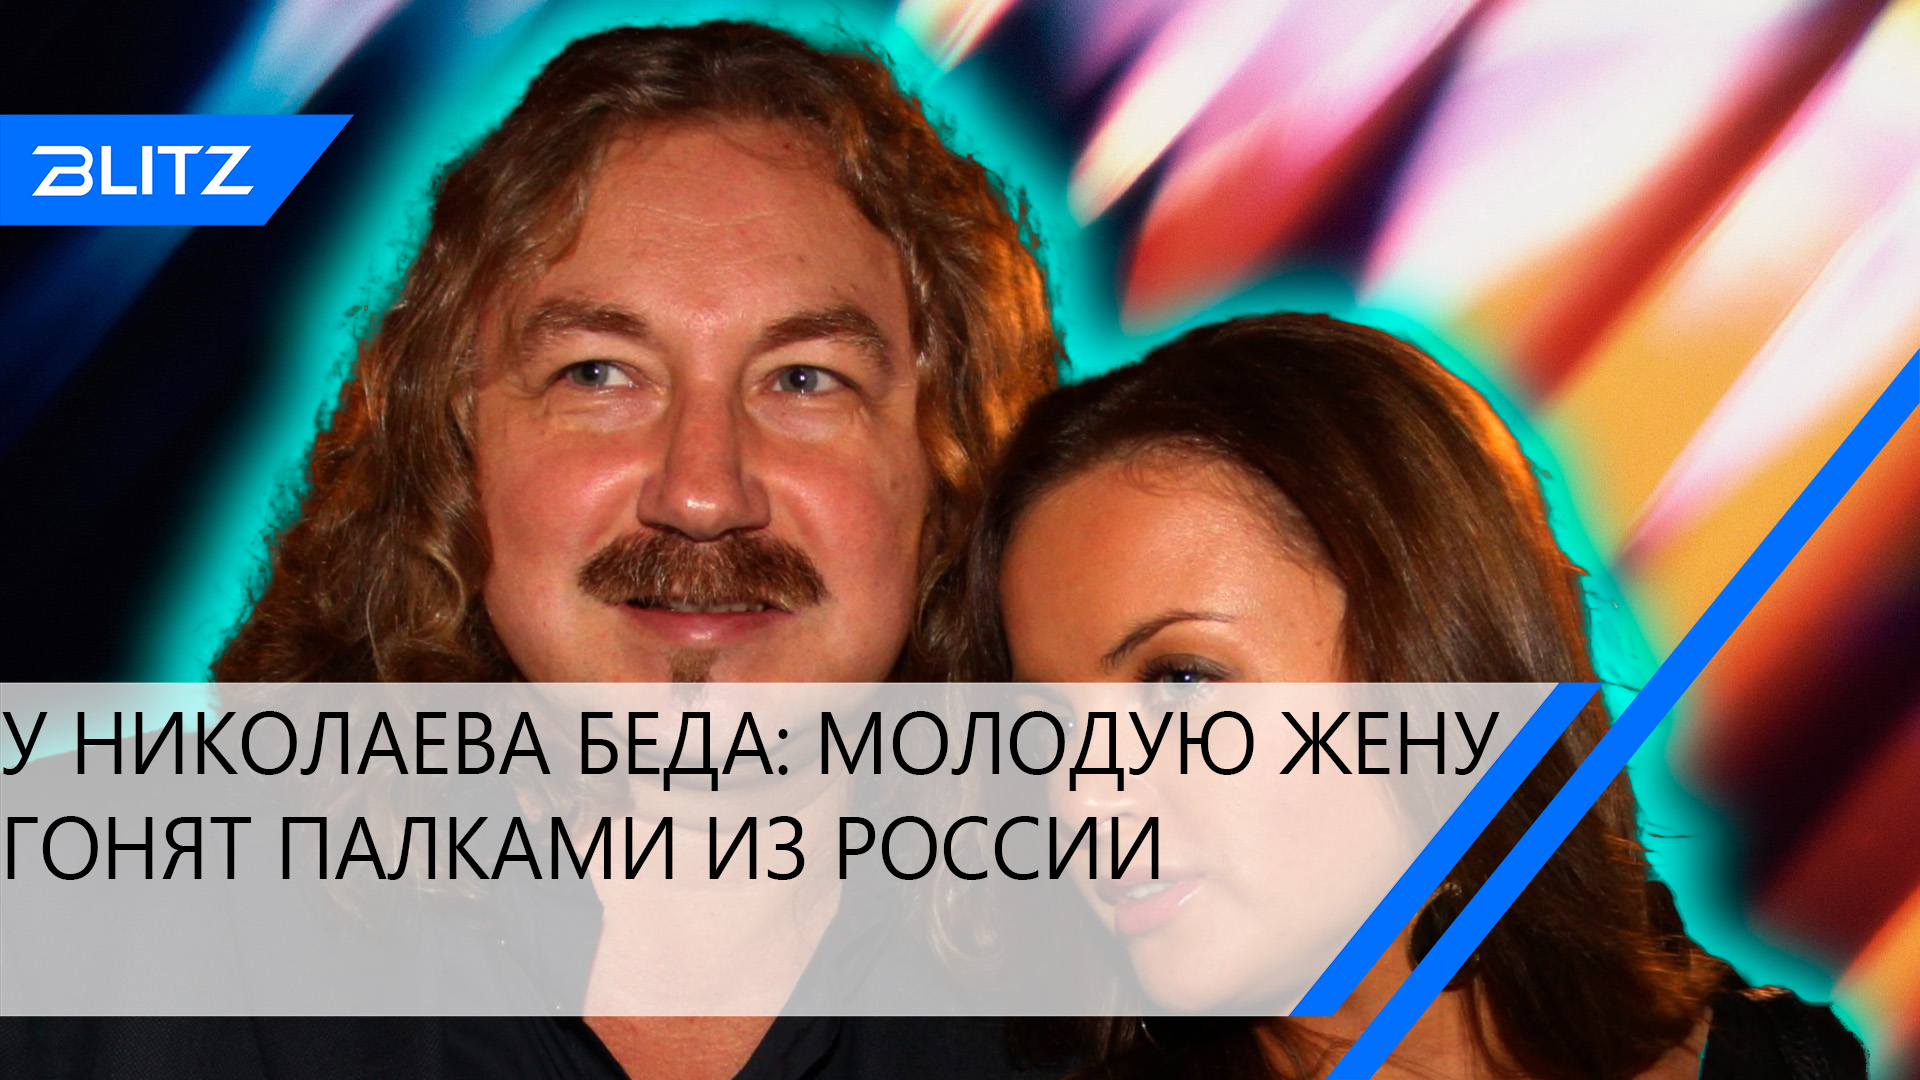 Игорь Николаев и его жена